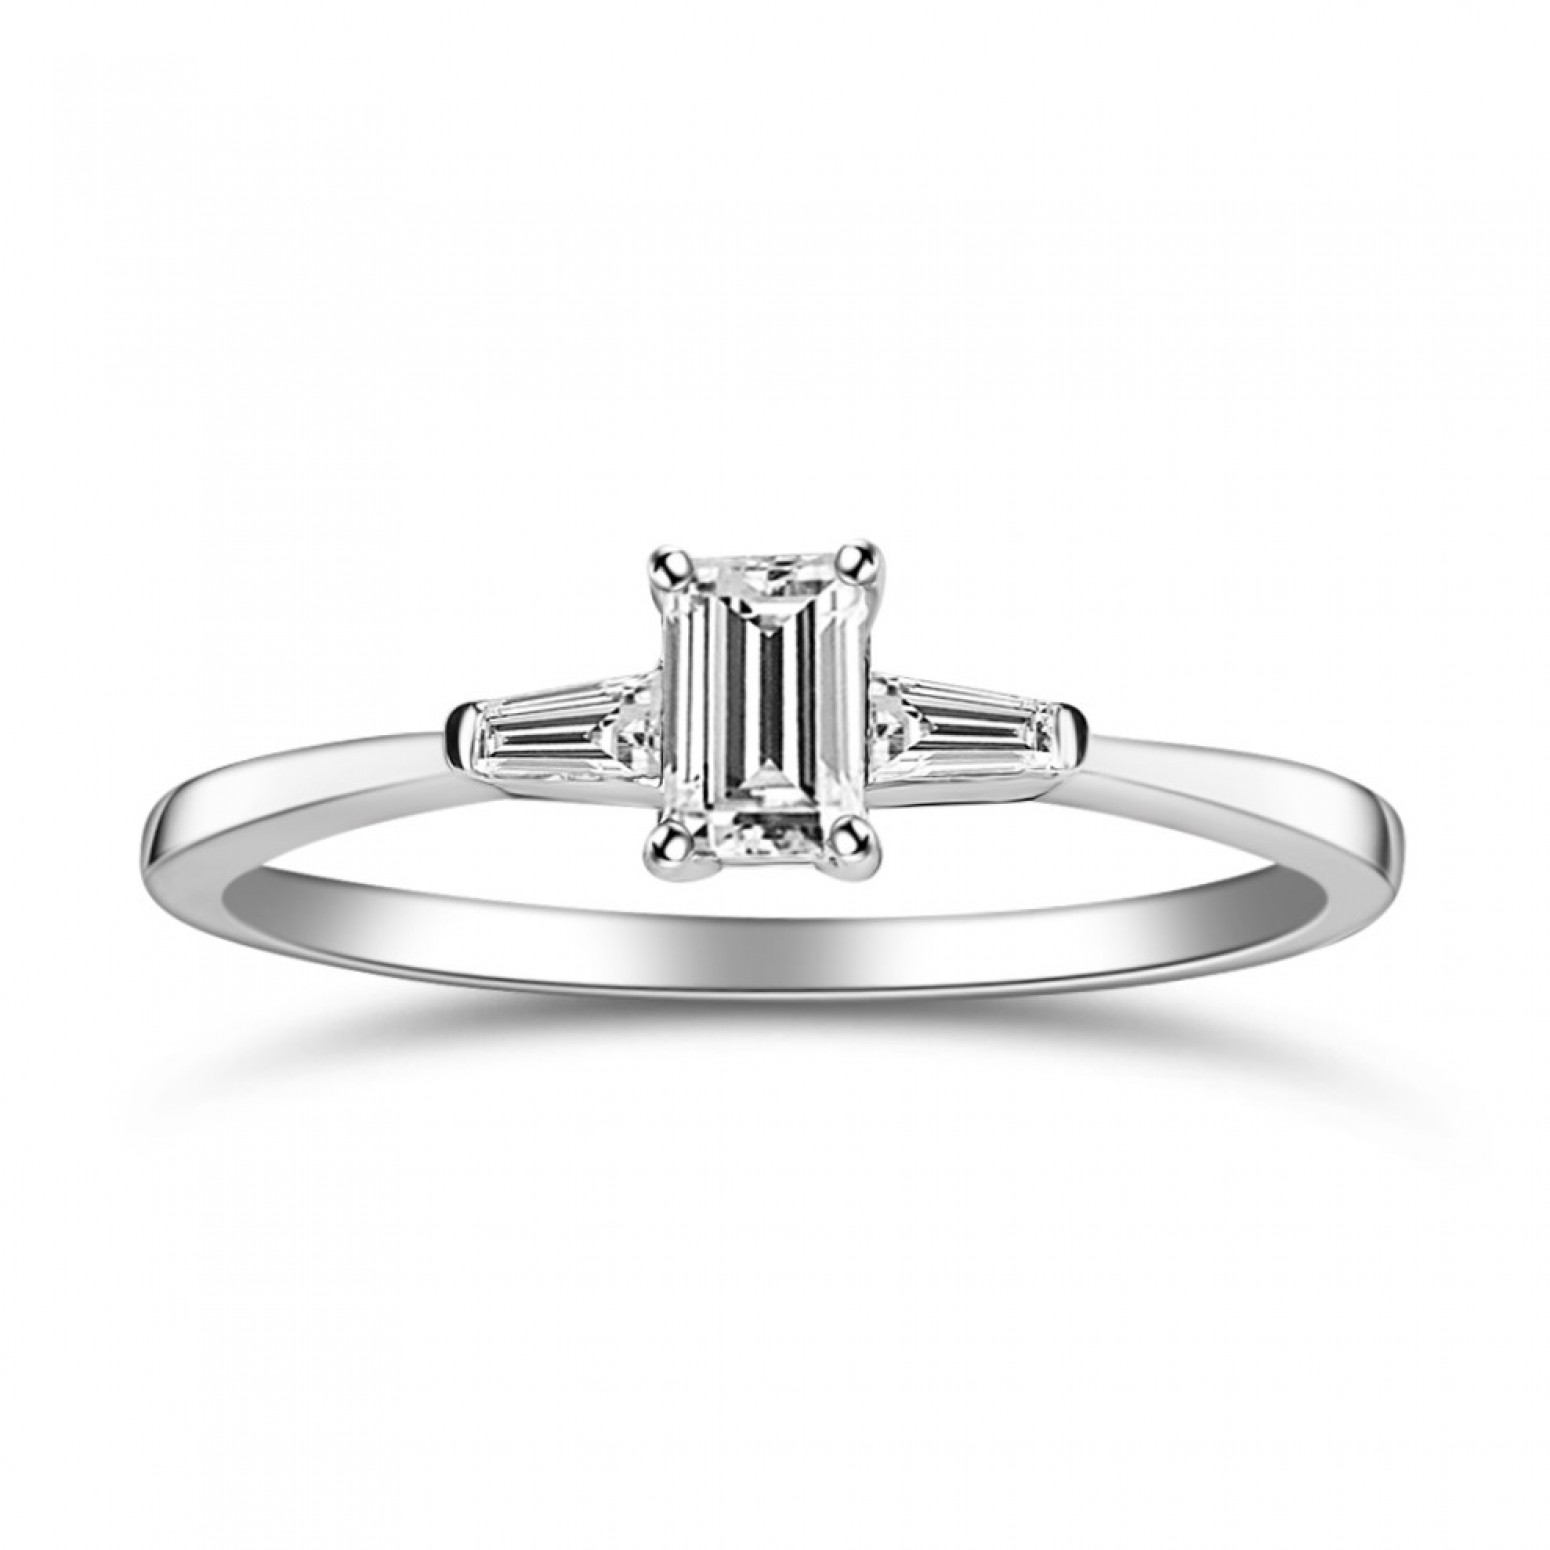 Multistone ring 18K white gold with diamonds 0.25ct, VS1, G da4323 ENGAGEMENT RINGS Κοσμηματα - chrilia.gr